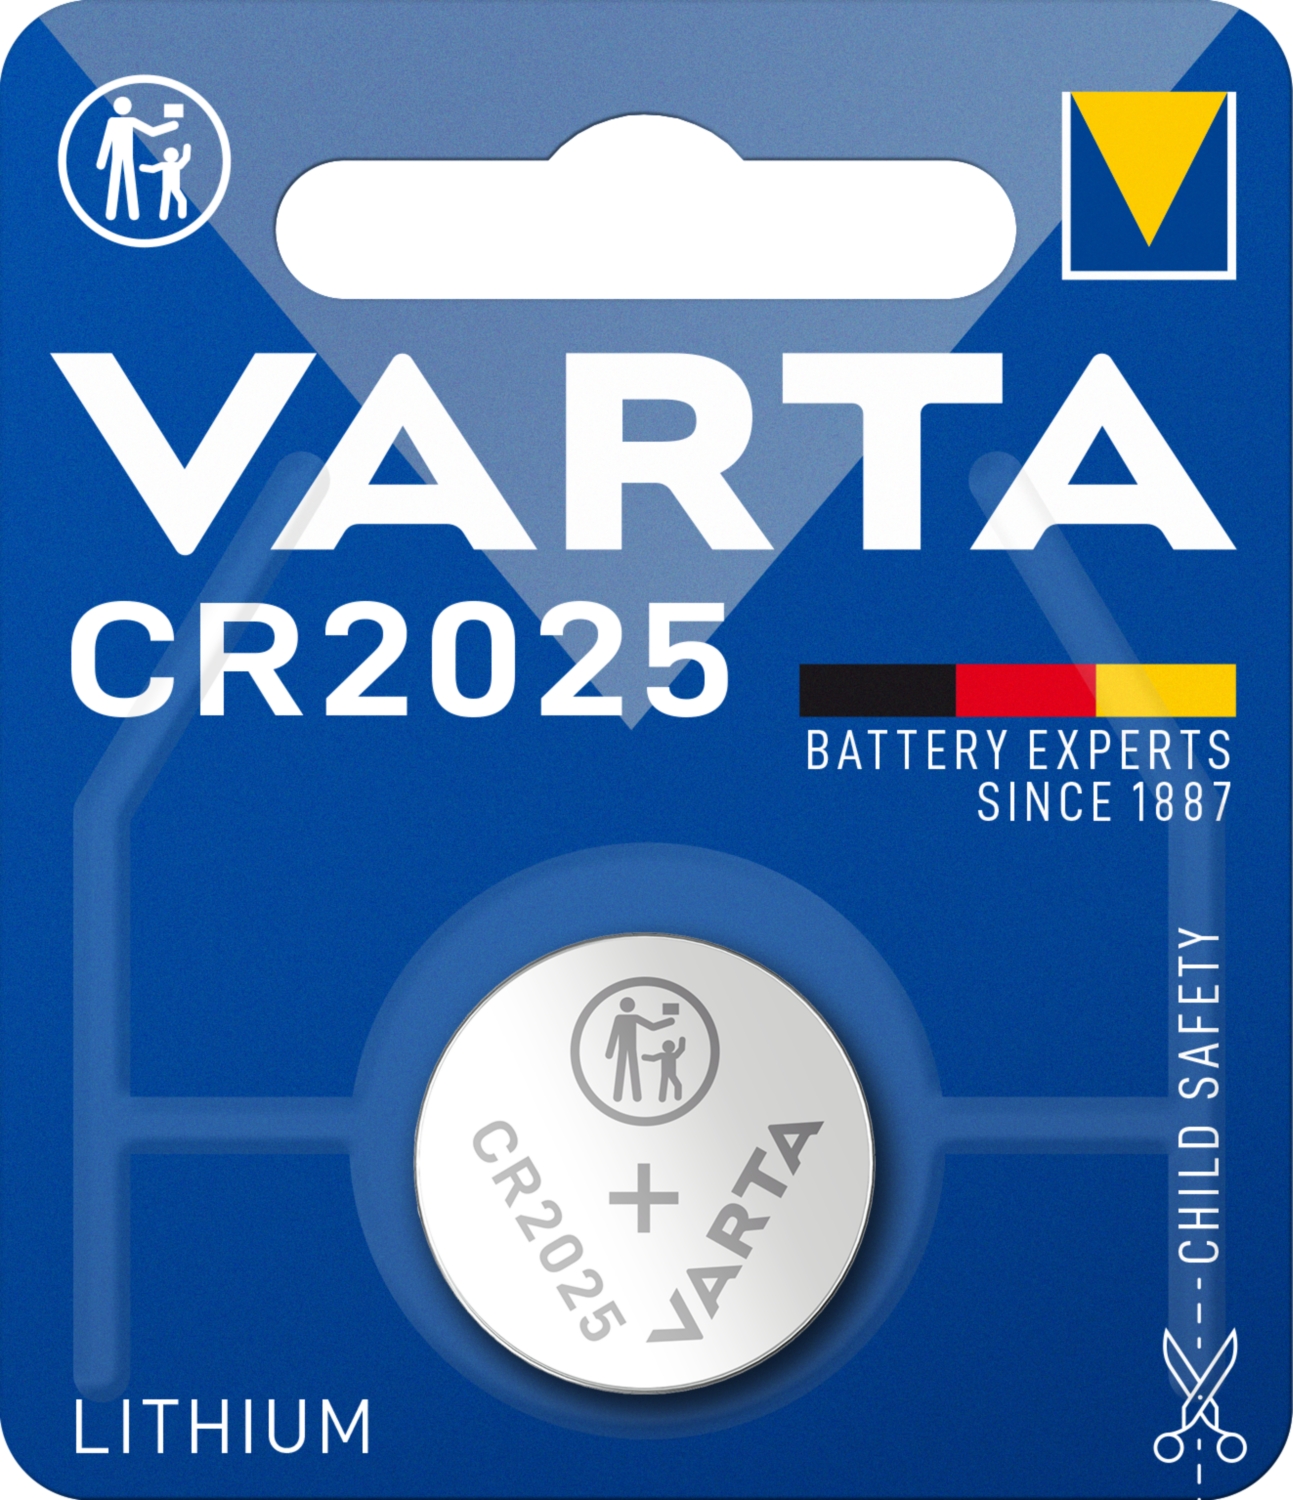 Pile bouton lithium CR2025 Varta